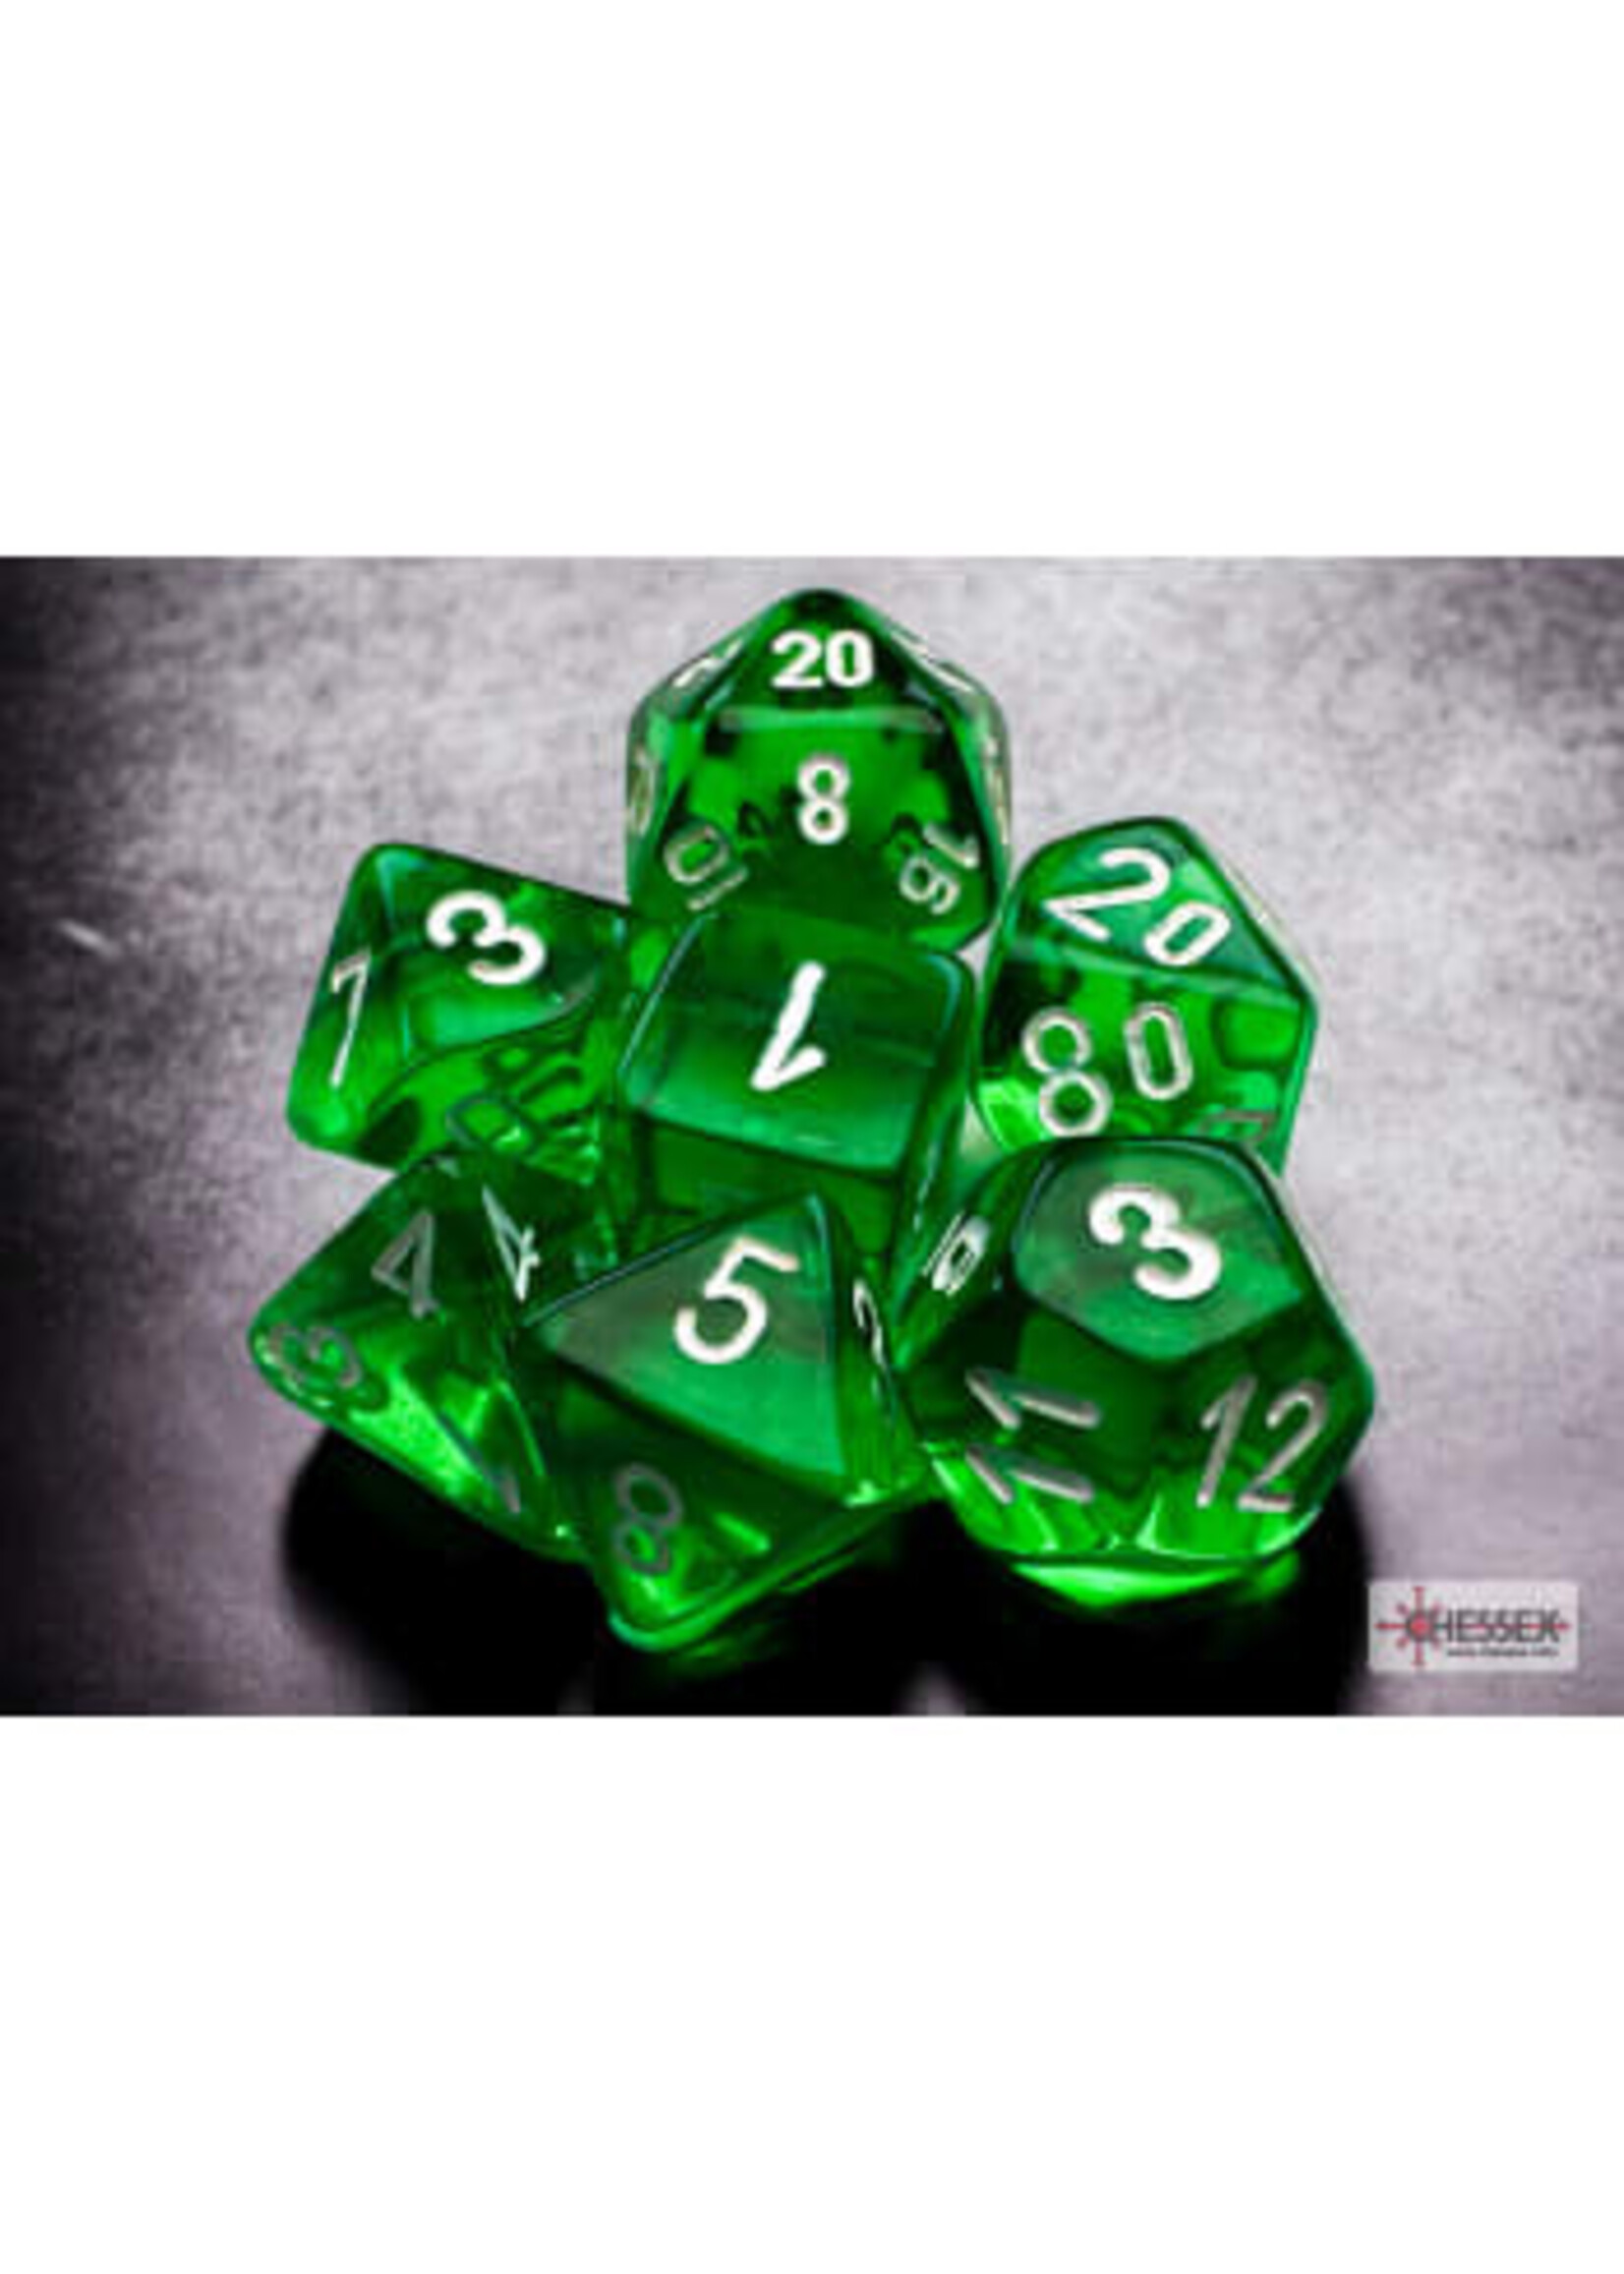 Chessex Translucent Mini 7 Set: Green w/ white